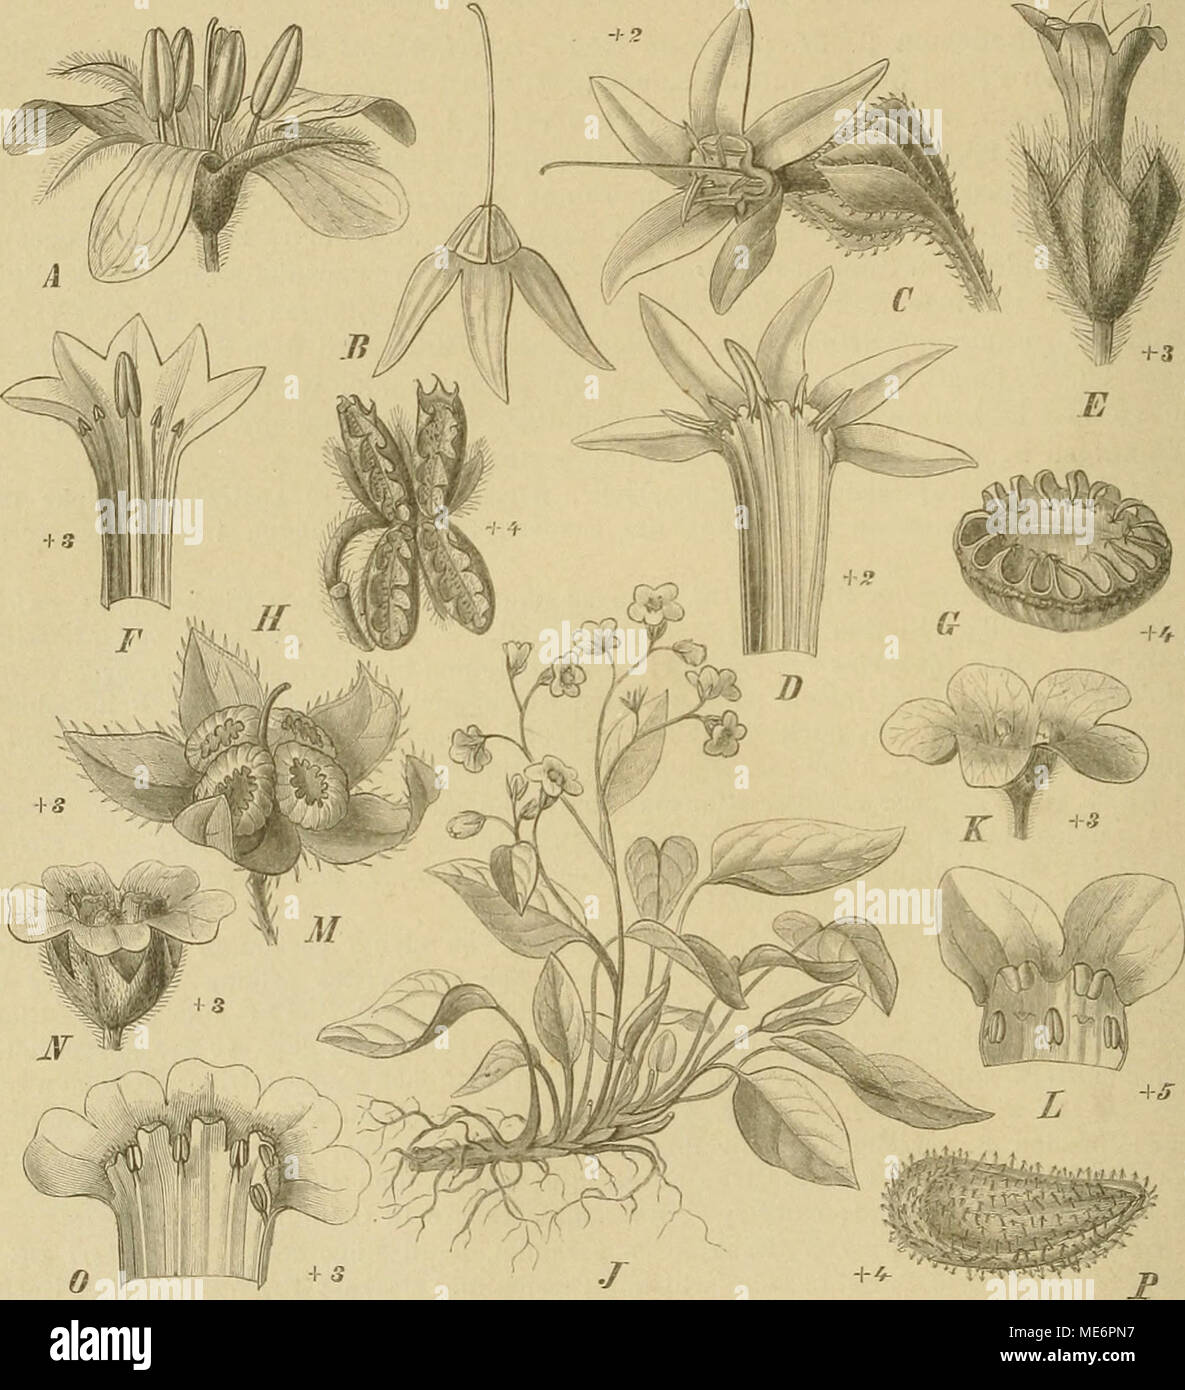 . Die NatÃ¼rlichen Pflanzenfamilien : nebst ihren Gattungen und wichtigeren Arten, insbesondere den Nutzpflanzen . Fig. 41. A, B Brachijhotrjis paridiformis Maxiin. A Bl.; Â£ Frkn. und Gr. mit zurÃ¼cligesclilageneni Kelch. â C, D Caccinia crussifÃ¼lia (Vent.) 0.&quot; Ktzn. 6'Bl. von auÃen; D Bl. anfgosclinitten. â EâG Heliocarya monandra Bunge. Â£â Bl. von auÃen; /&lt;'Bl. aufgeschnitten; 0 Klause. â II Pcctocanja linearis DC. Fr. â JâL Ompha- lodes verna MÃ¶nch. J ganze Pfl.; A' Bl.; Z 2 Zipfel der Bl. von innen gesehen. â M 0. Unifolia (L.) Munch, Fr. mit Kelch. â NâP Cynoglossum officinalc Stock Photo